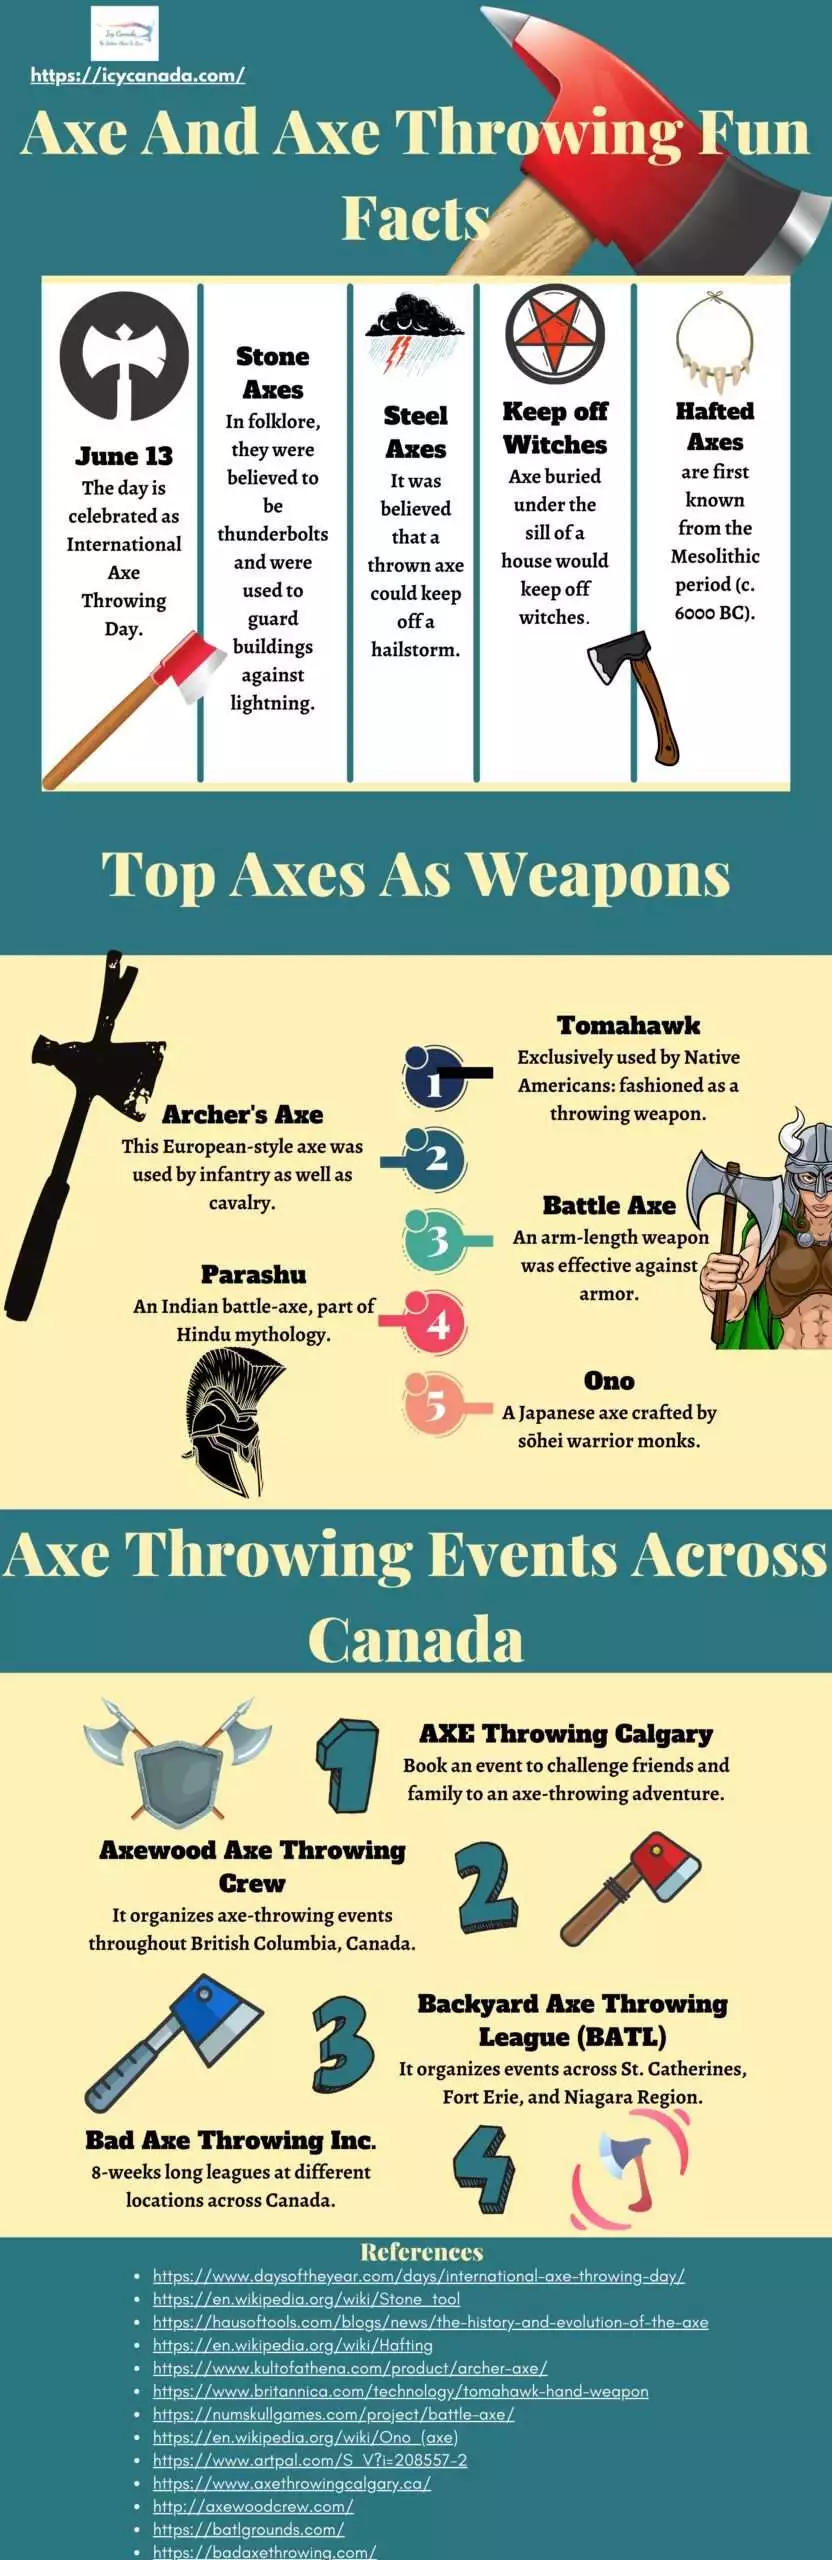 Axe And Axe Throwing Fun Facts